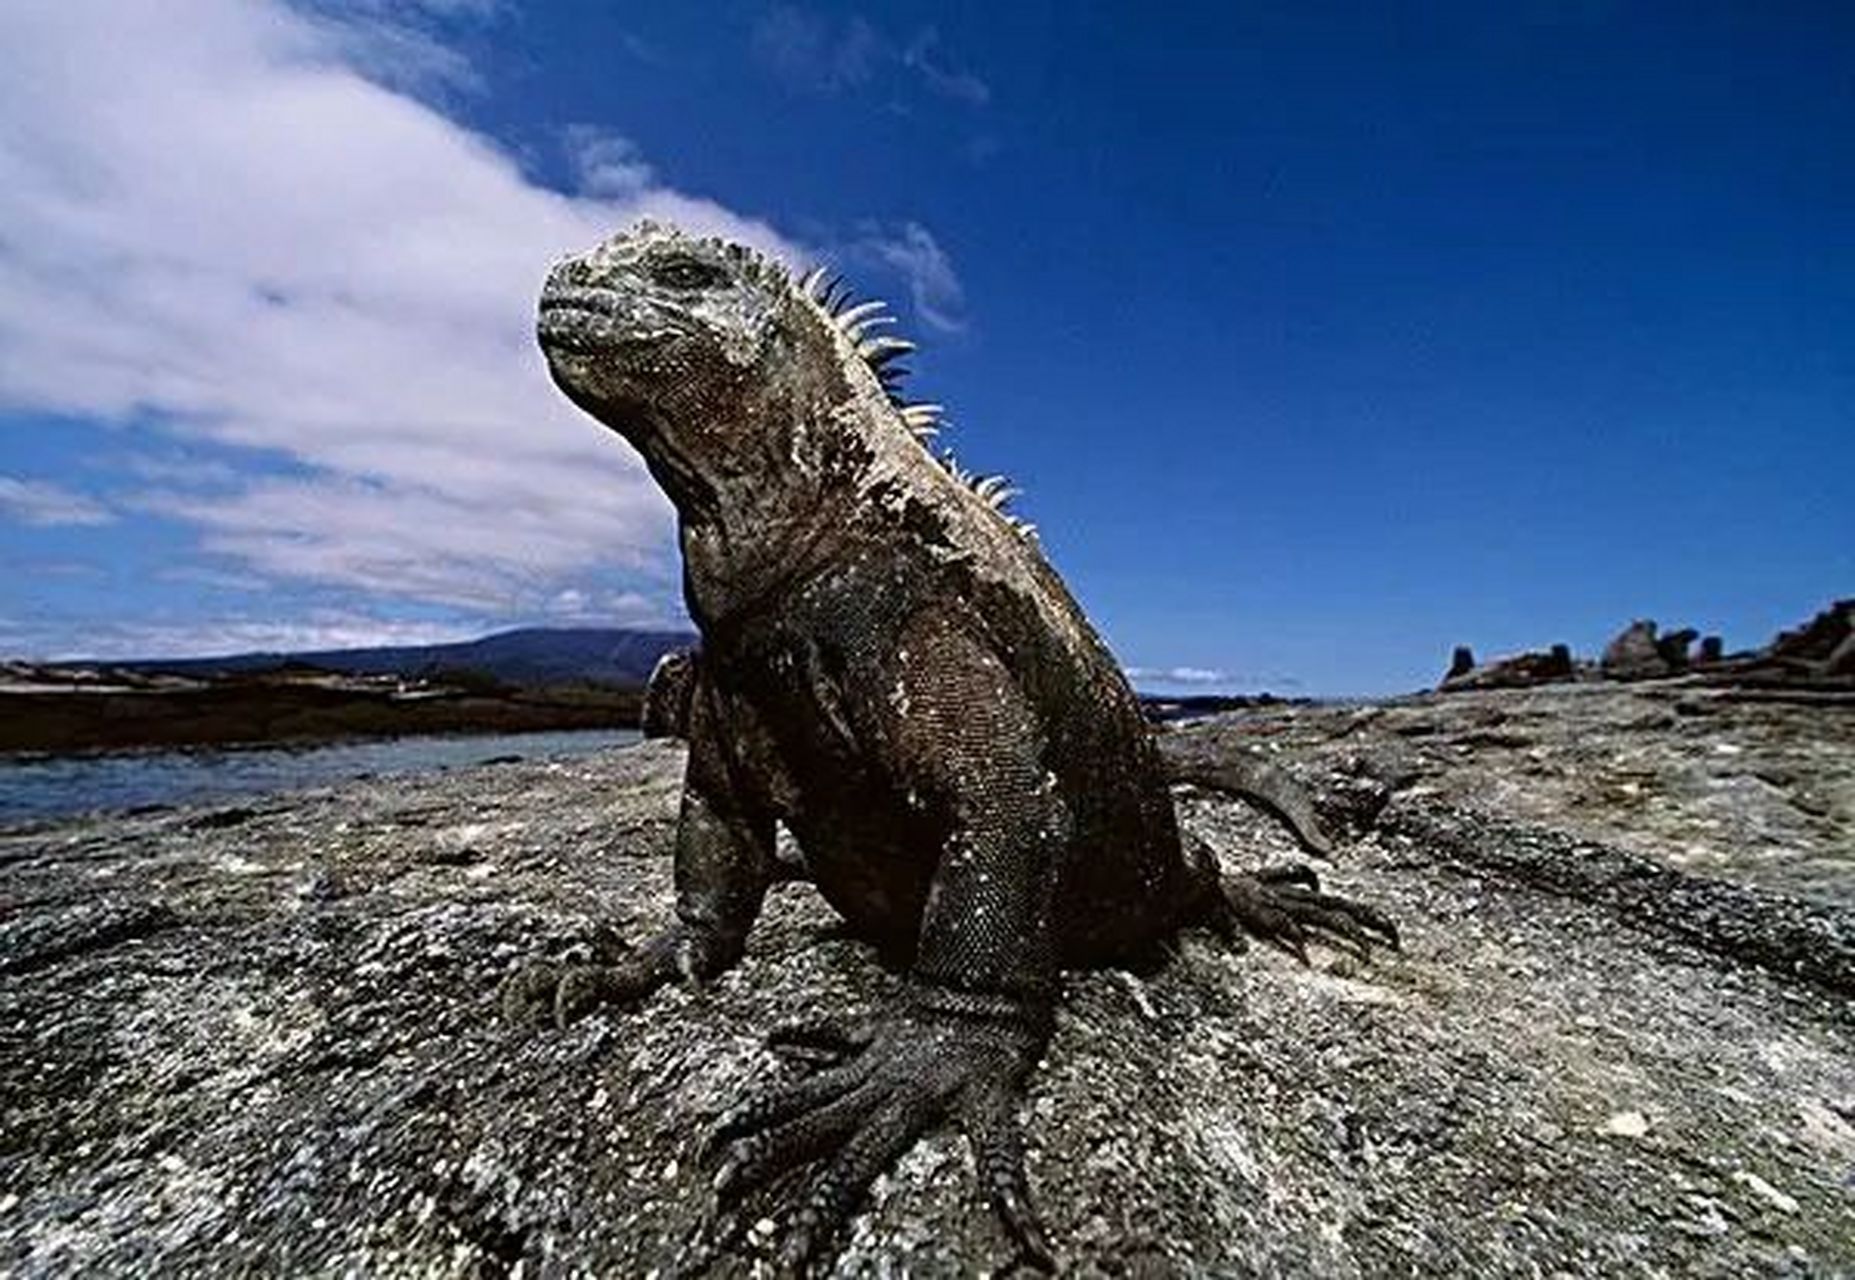 海鬣蜥长相有点凶狠呀 地球唯一水生蜥蜴 爬行速度非